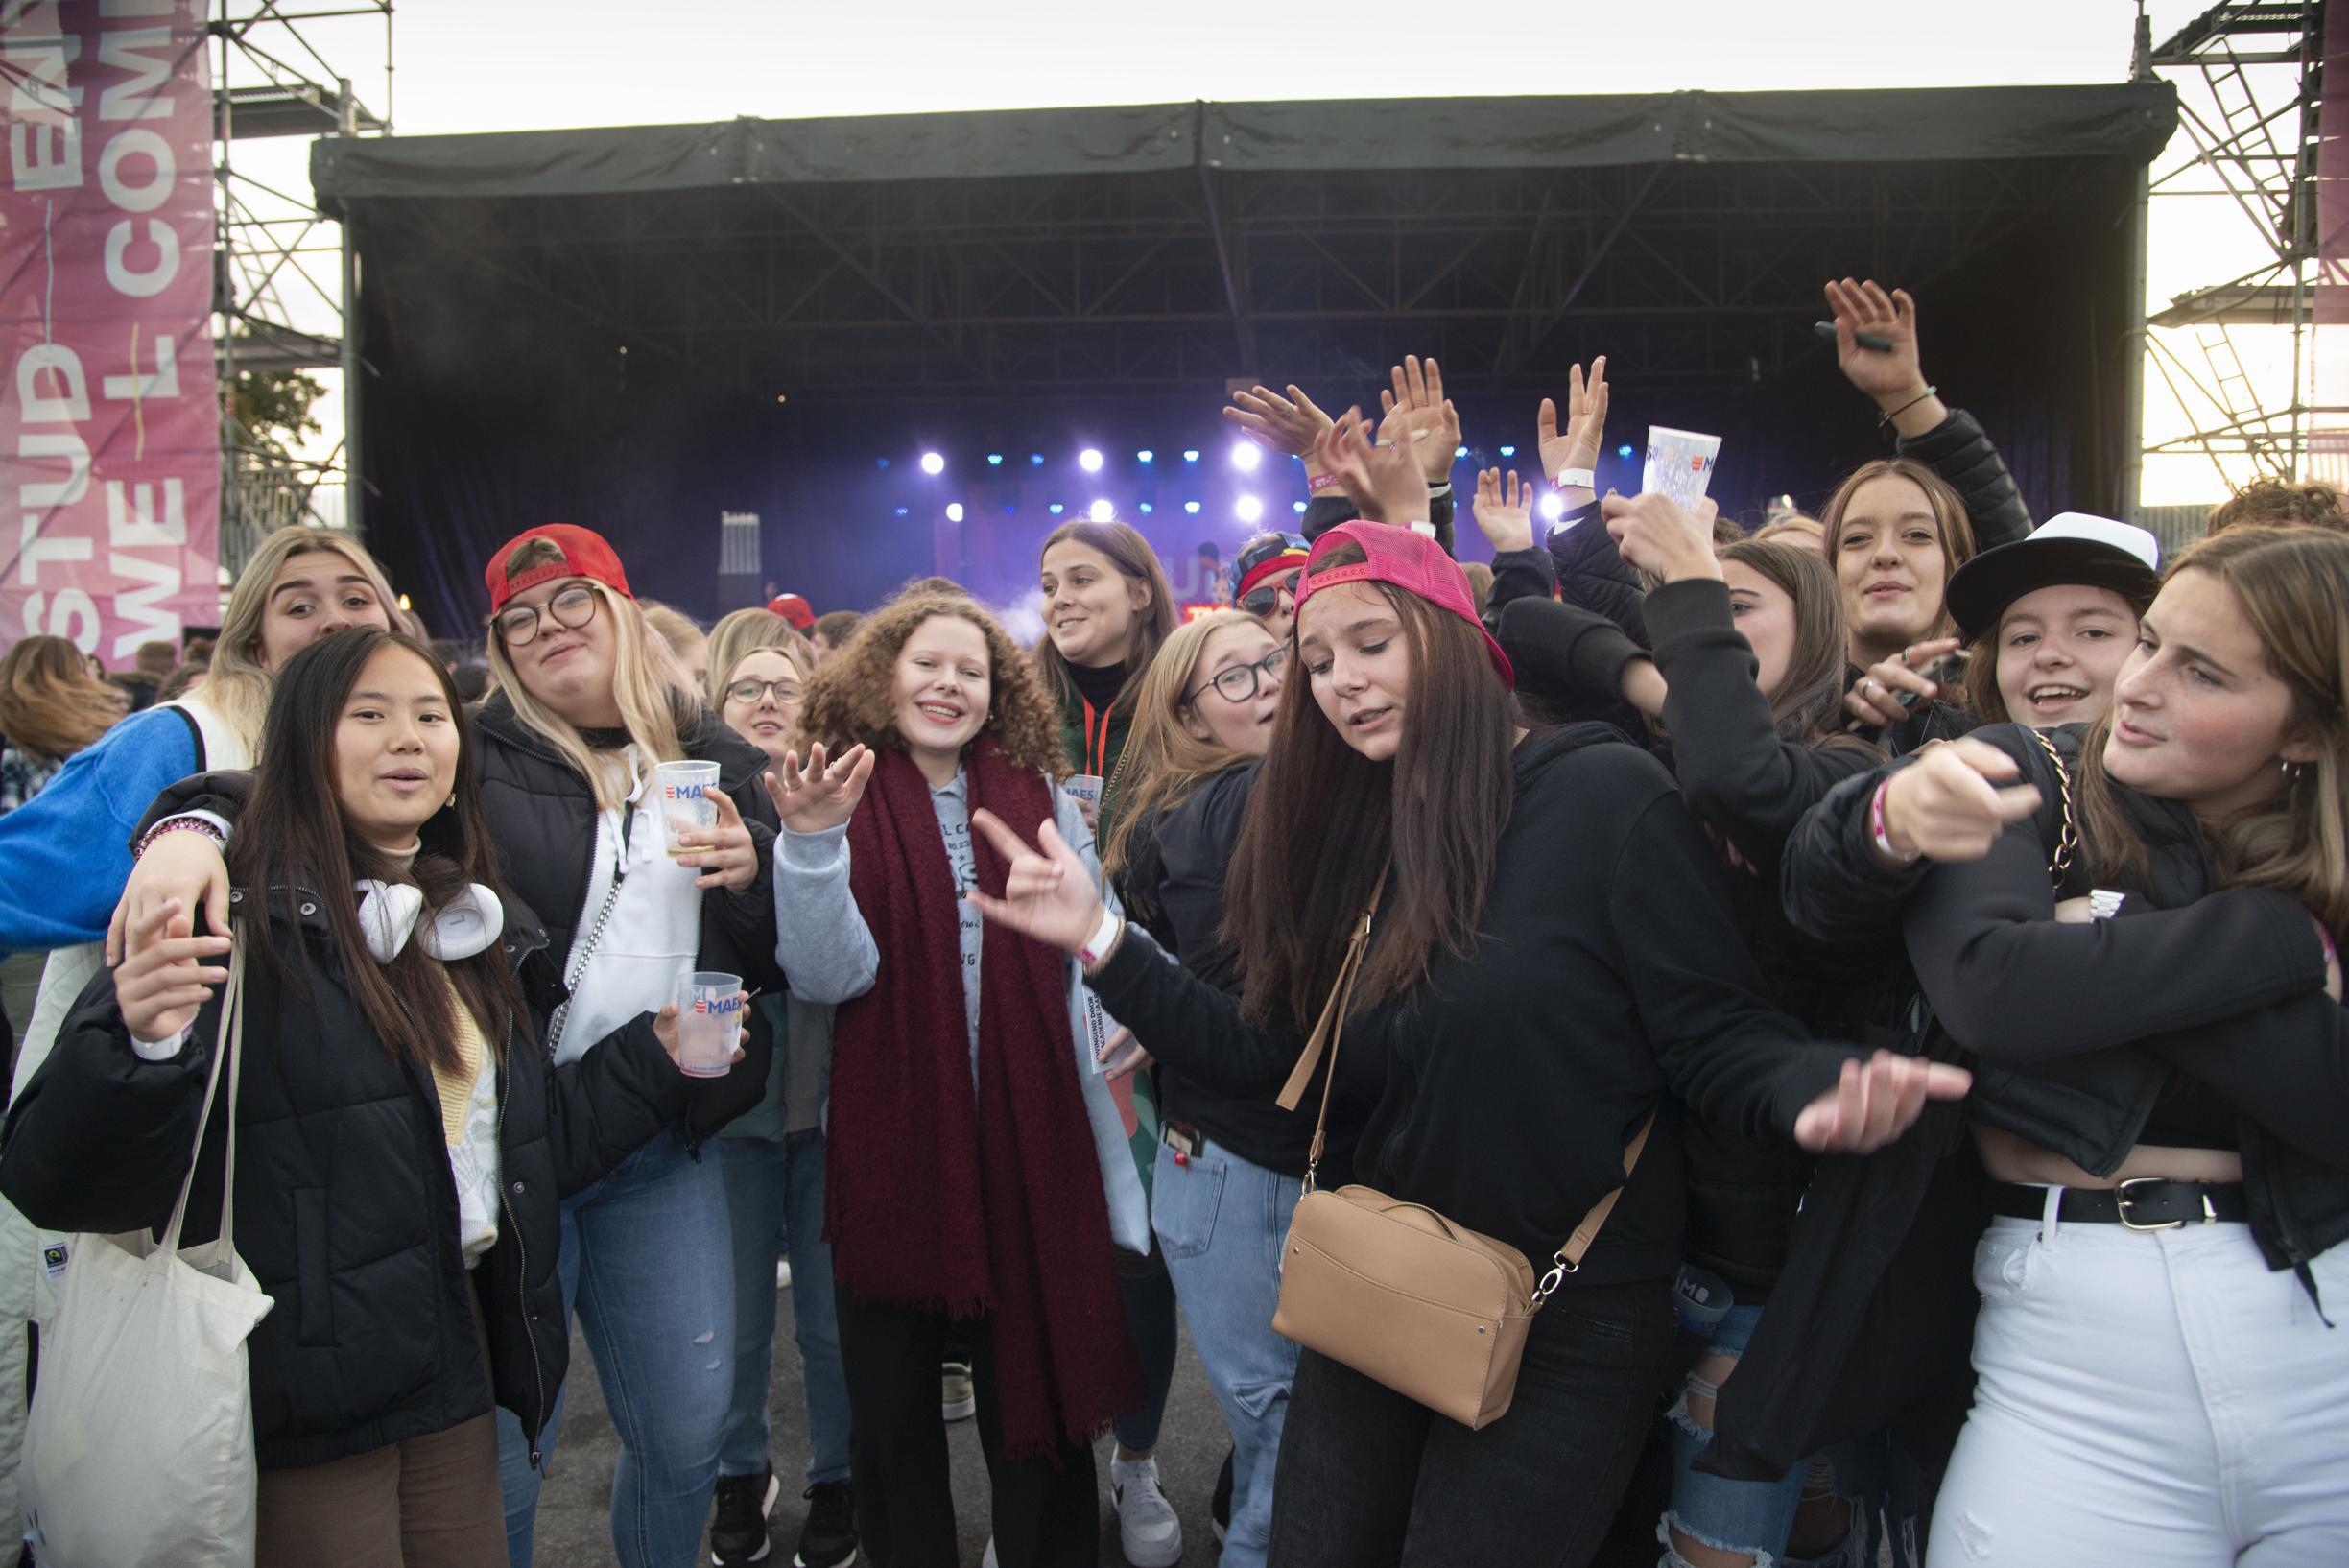 “Fantastisch wat Brugge doet om studentensfeer te creëren”: studenten zetten academiejaar enthousiast in met Student Welcome